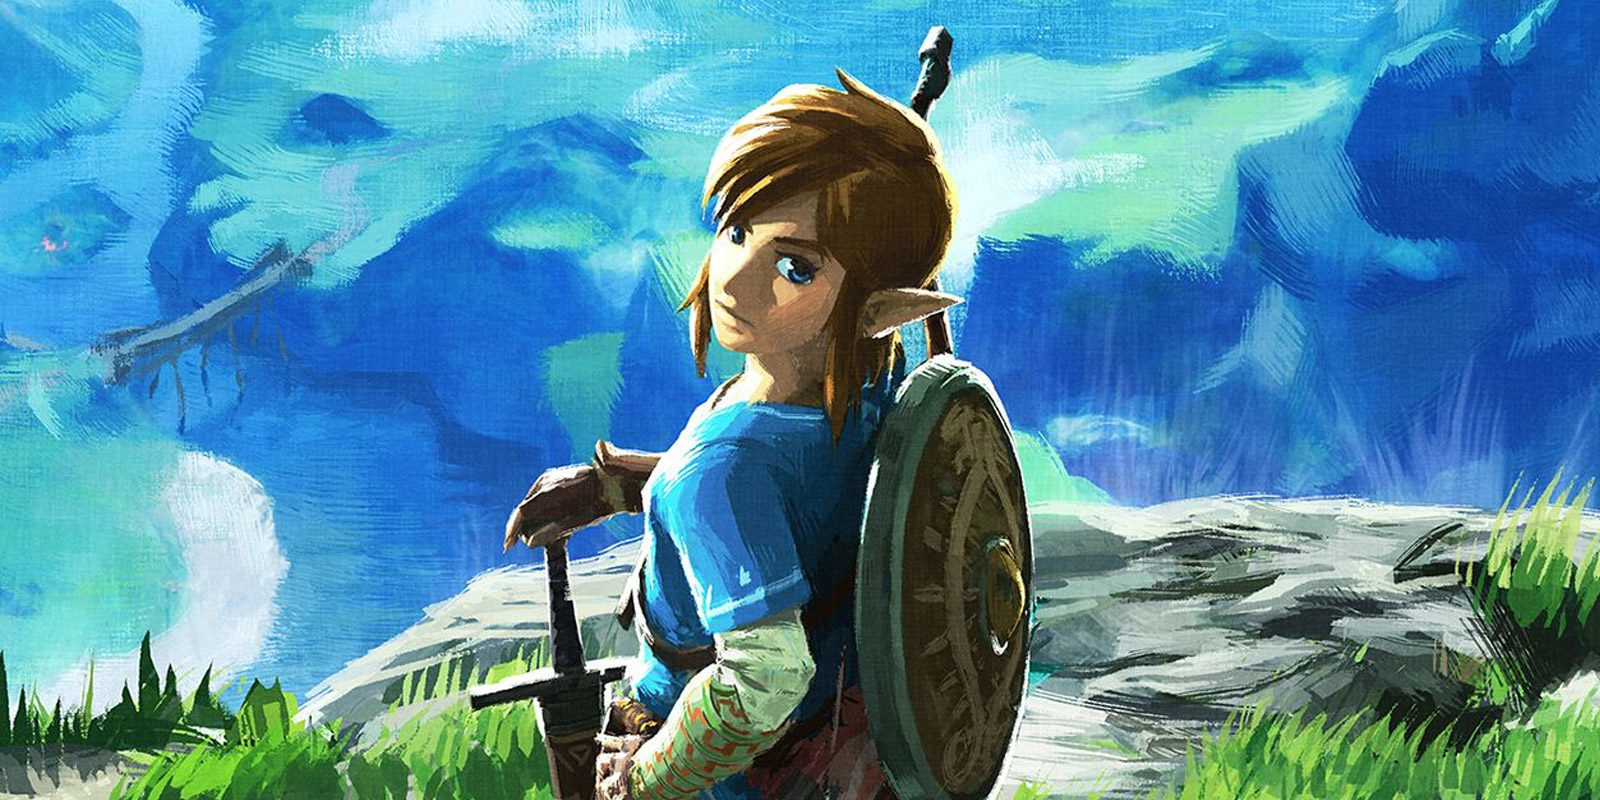 La guía especial de 'The Legend of Zelda: Breath of the Wild' se retrasa